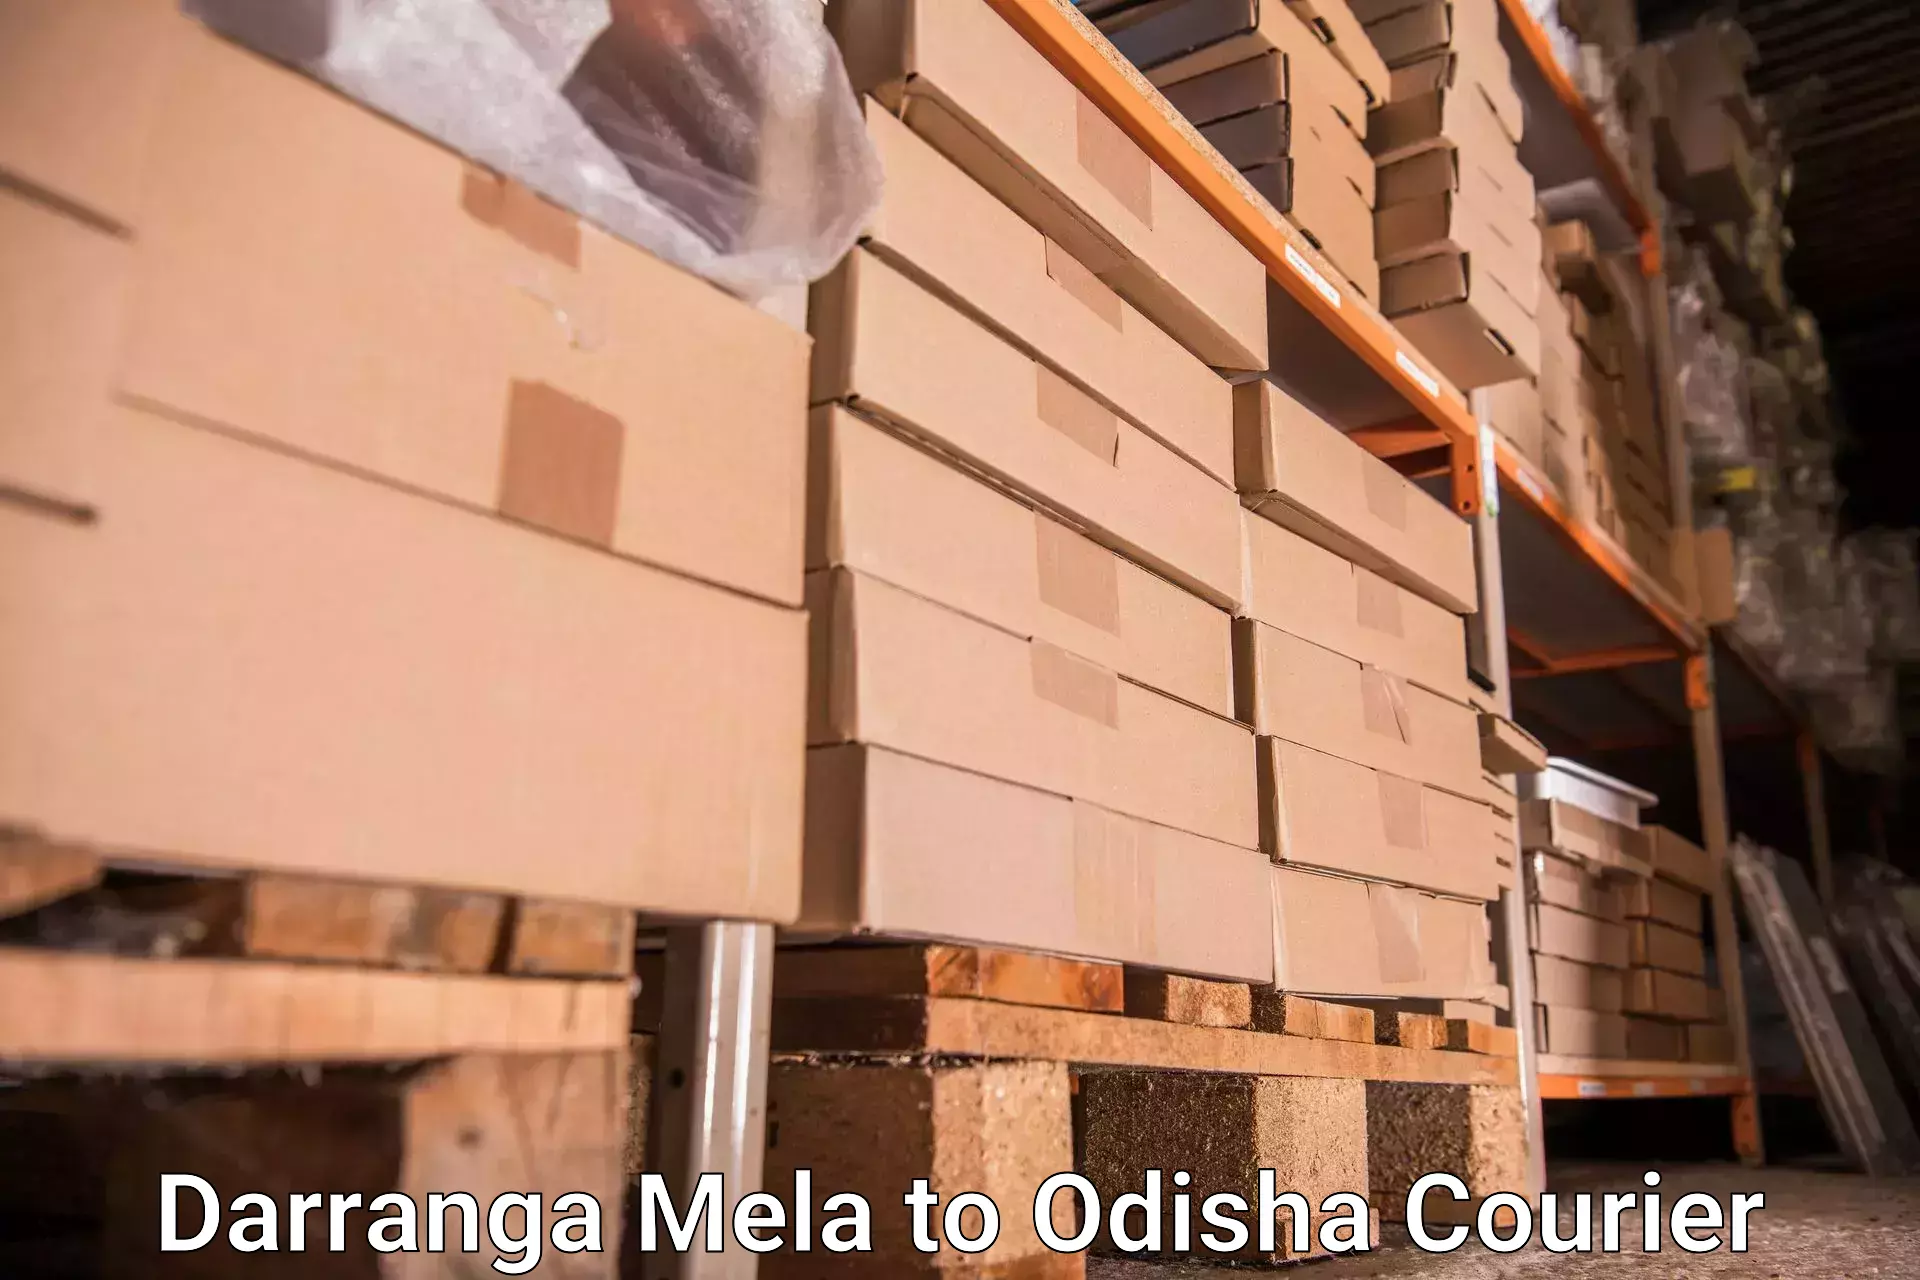 Online luggage shipping Darranga Mela to Odisha